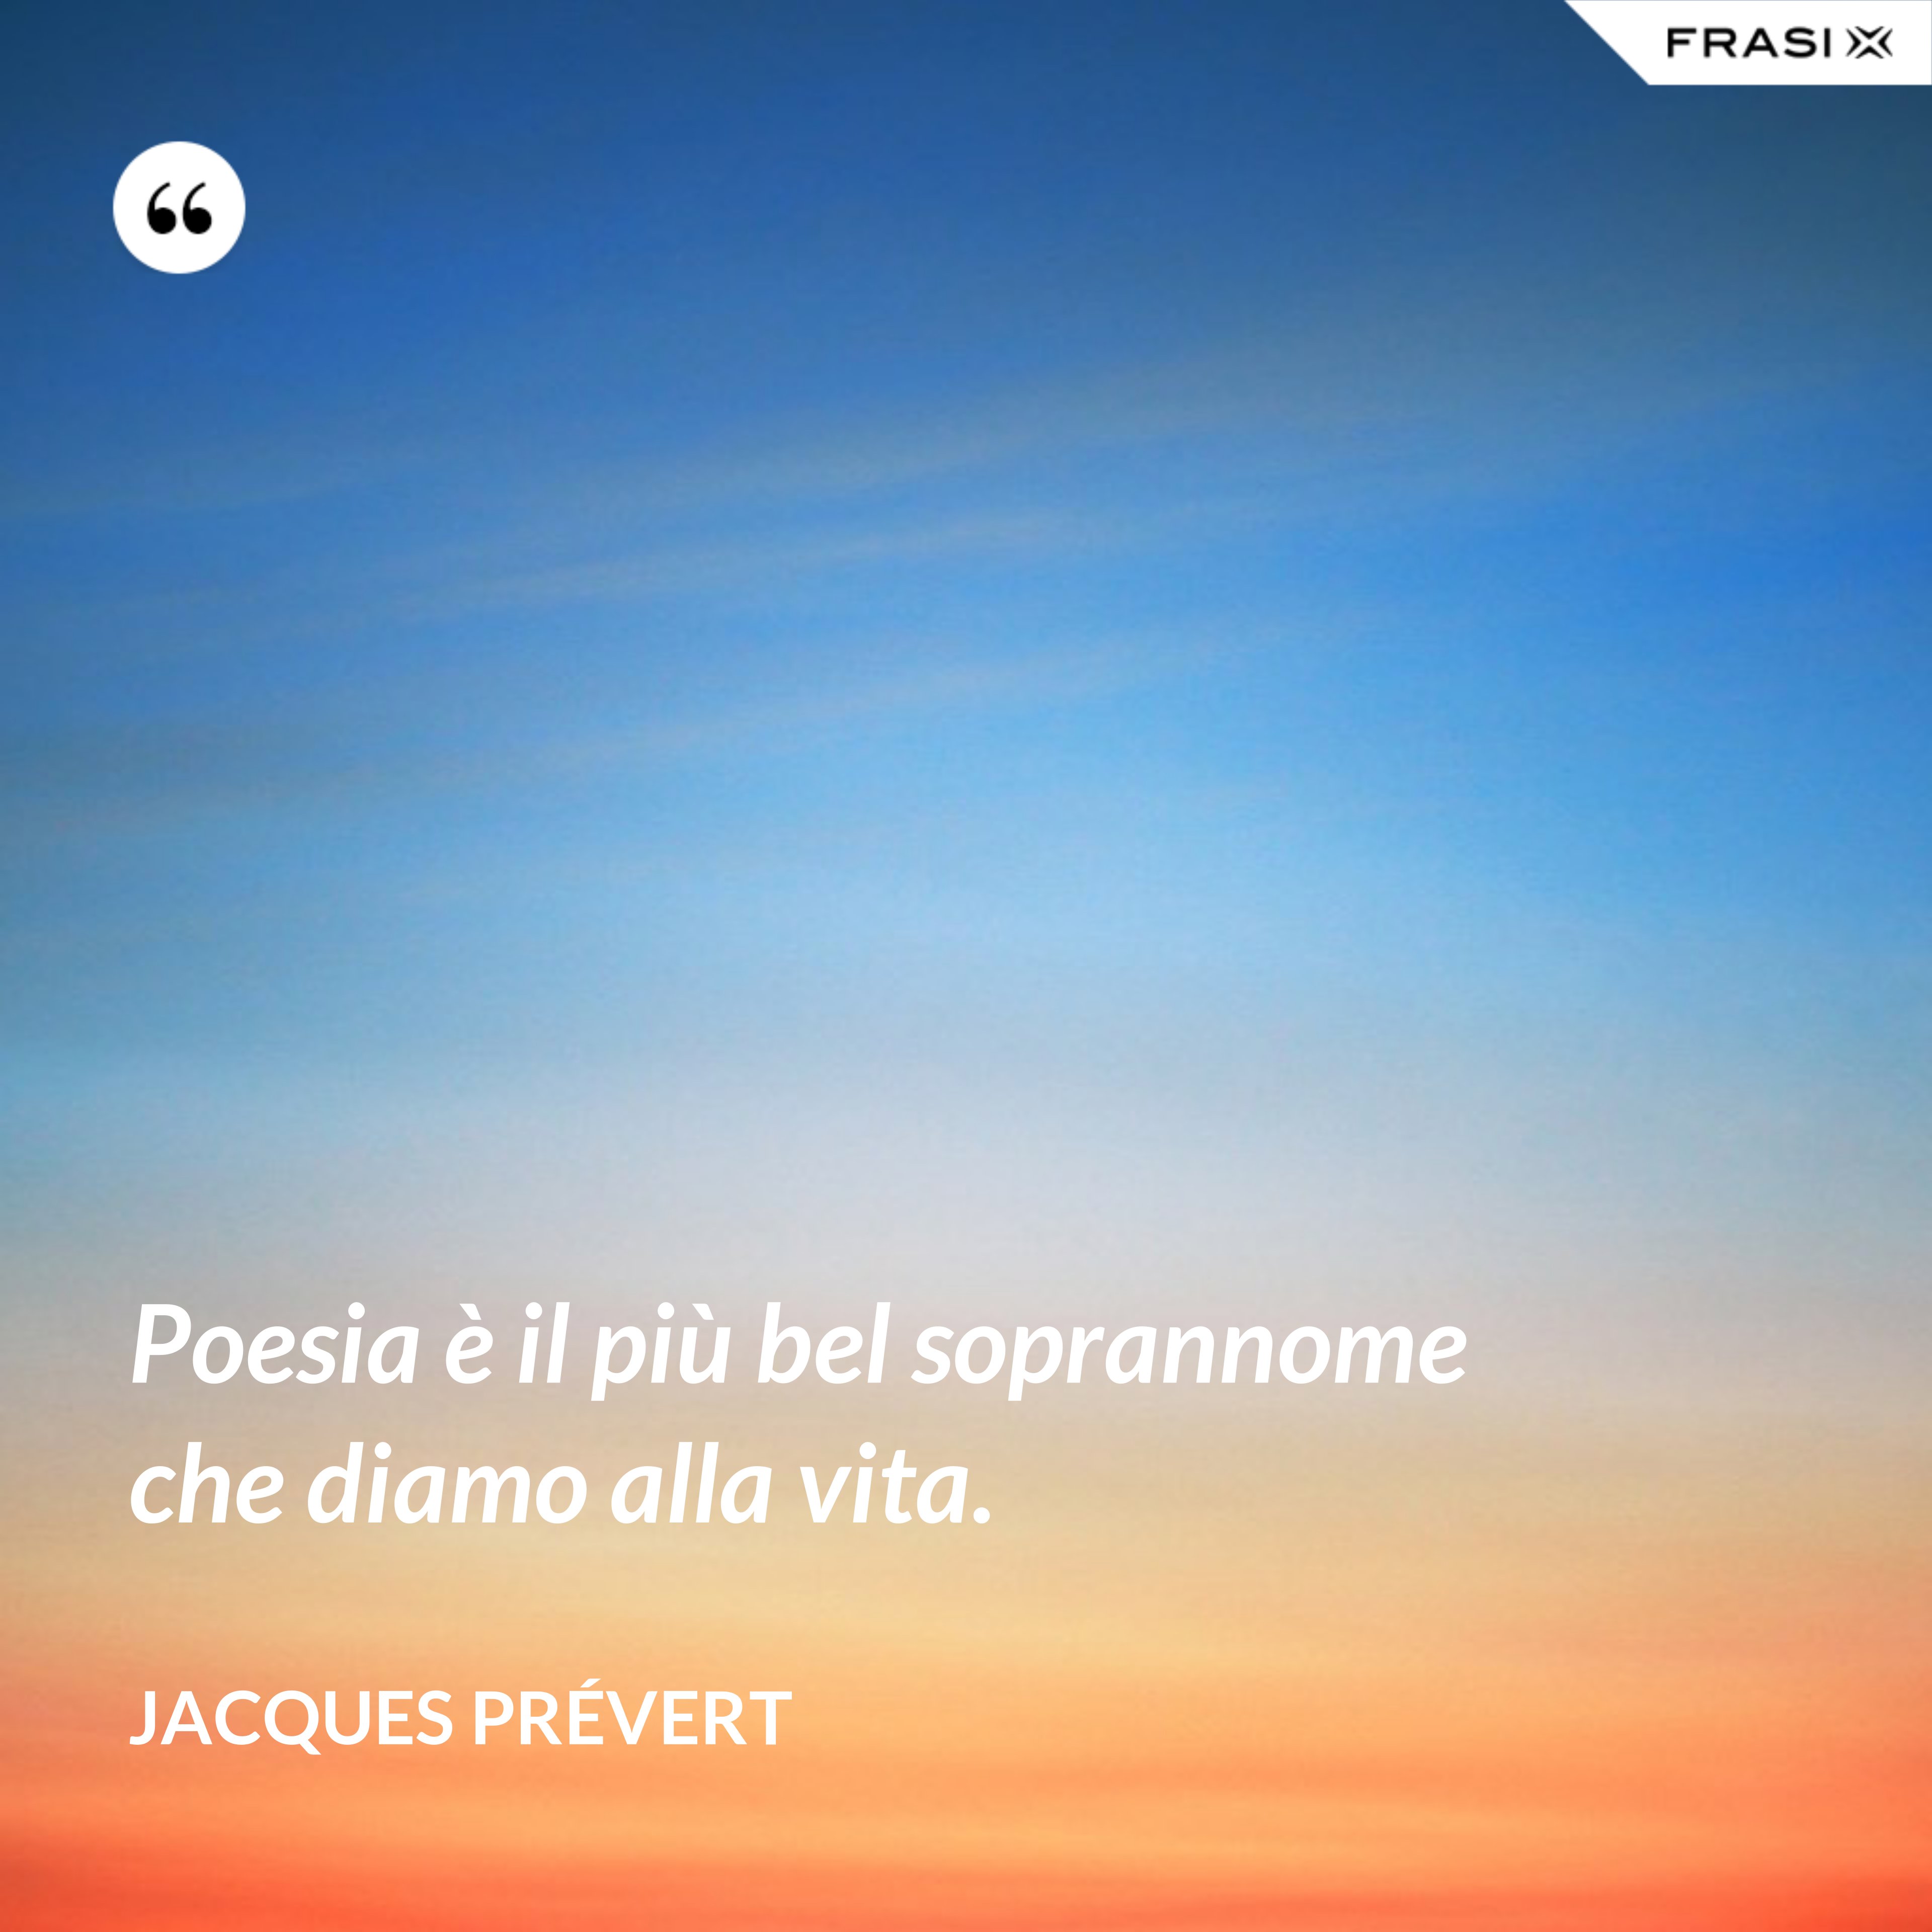 Poesia è il più bel soprannome che diamo alla vita. - Jacques Prévert